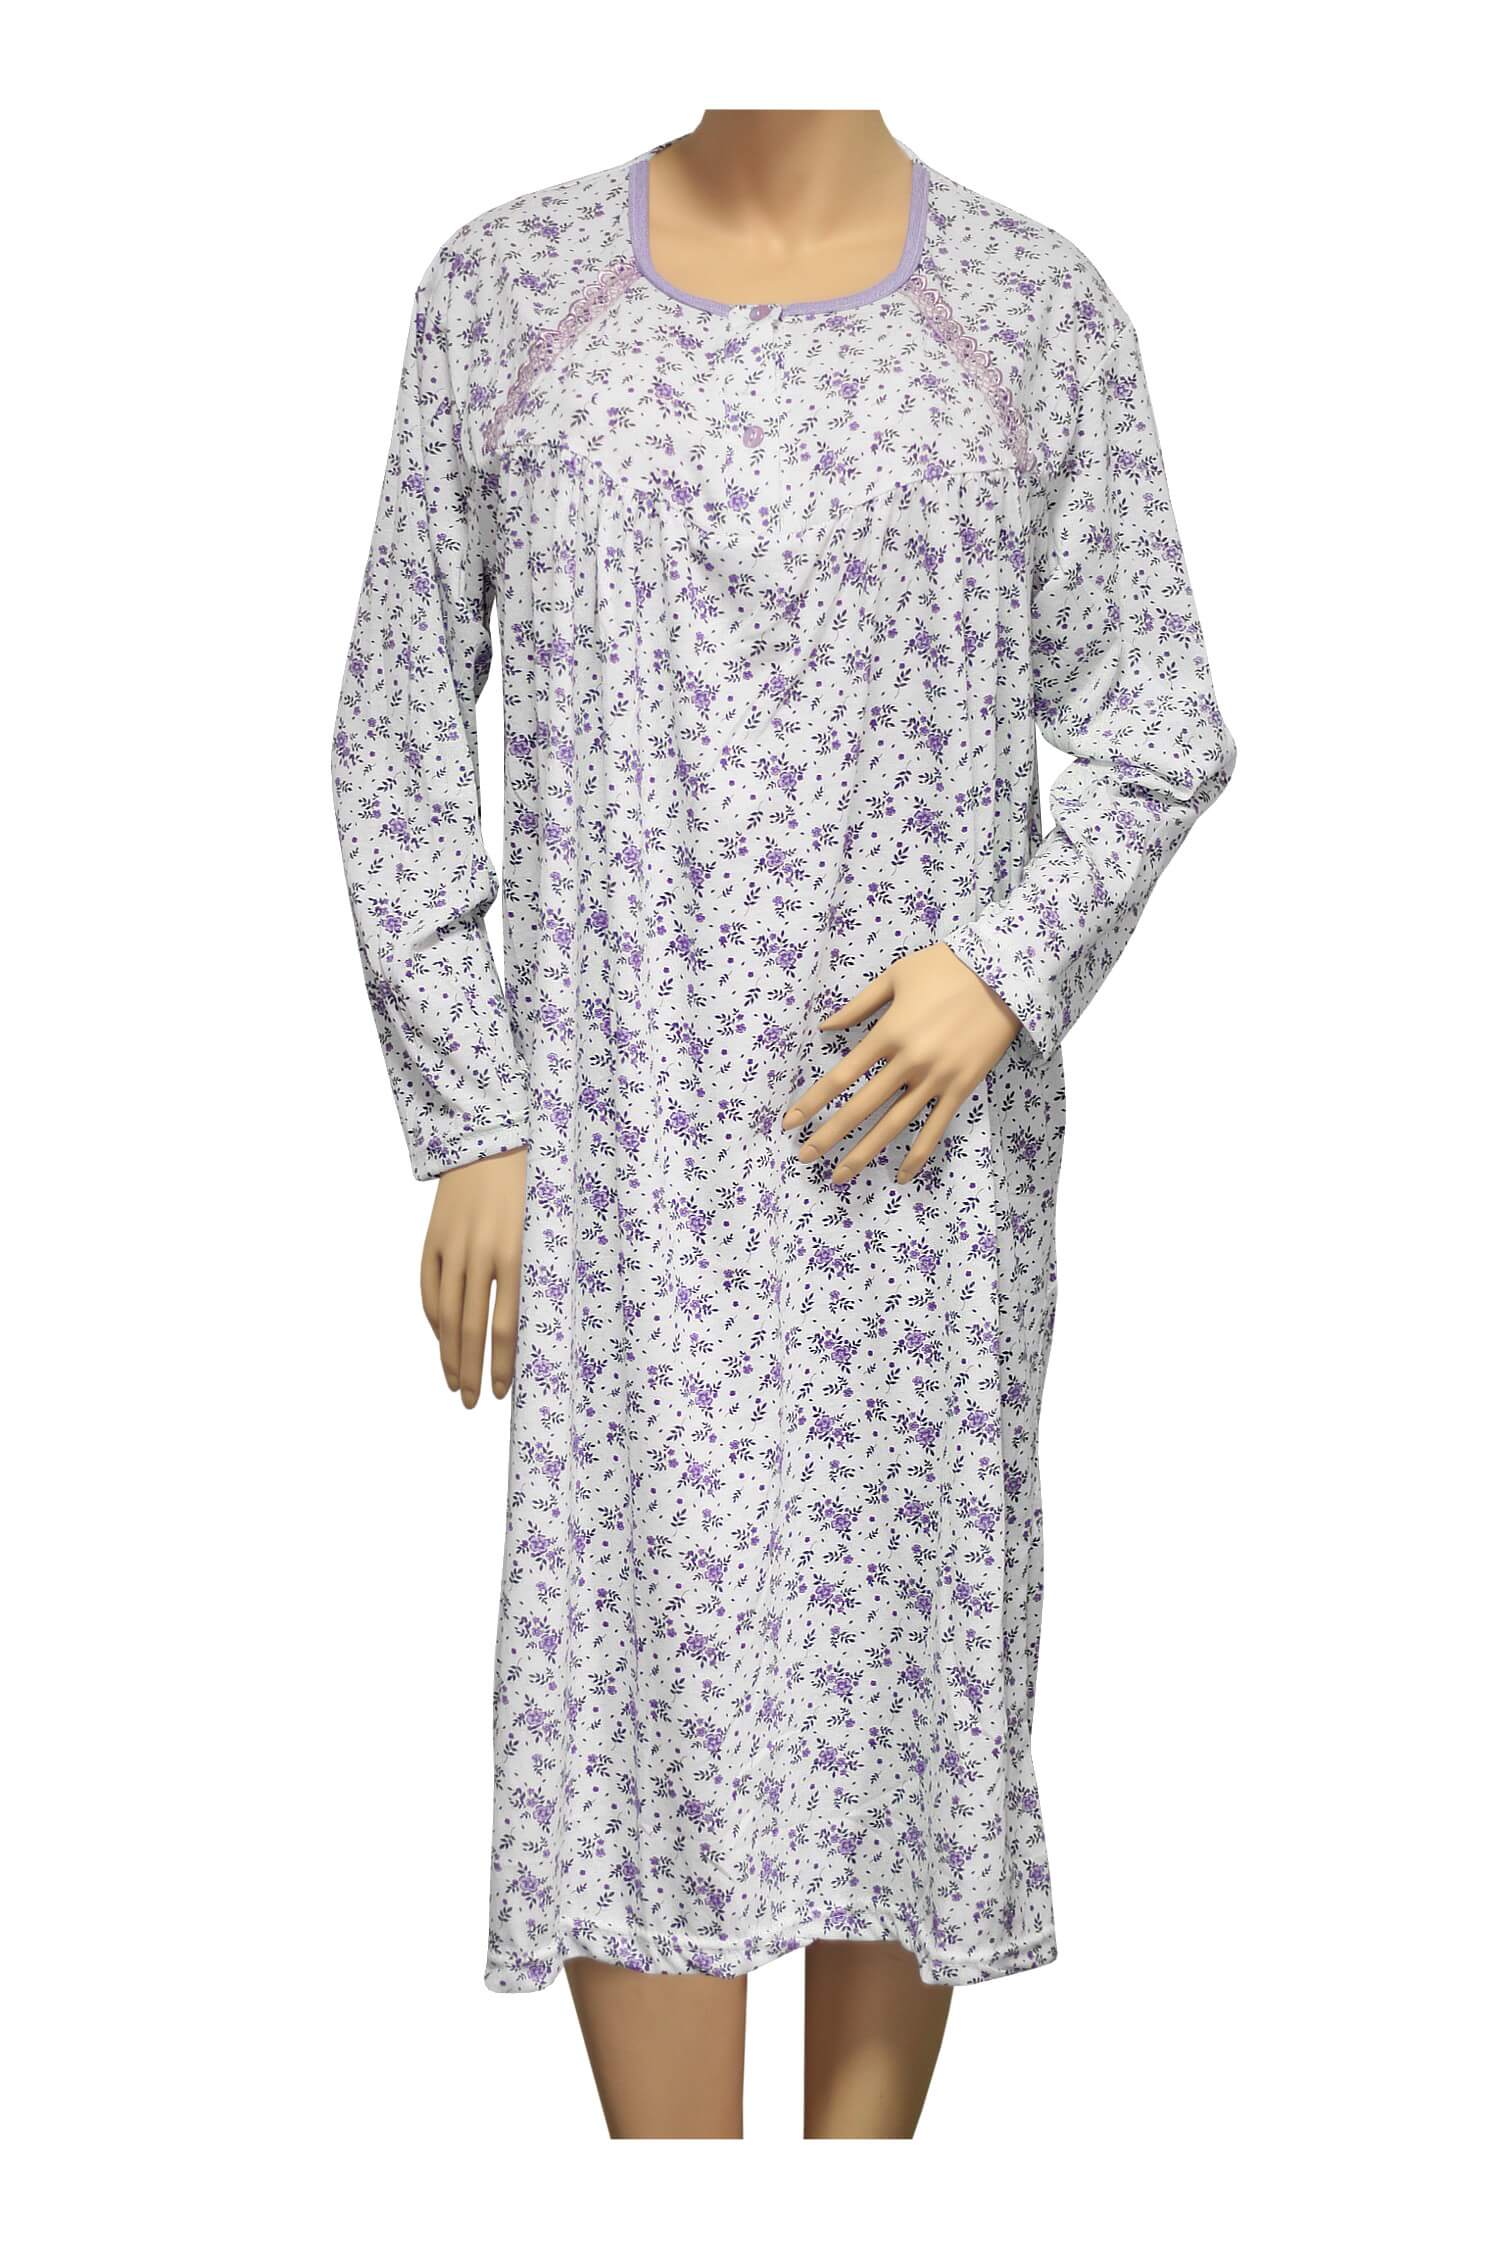 Karina dámská noční košile 1008 XL fialová